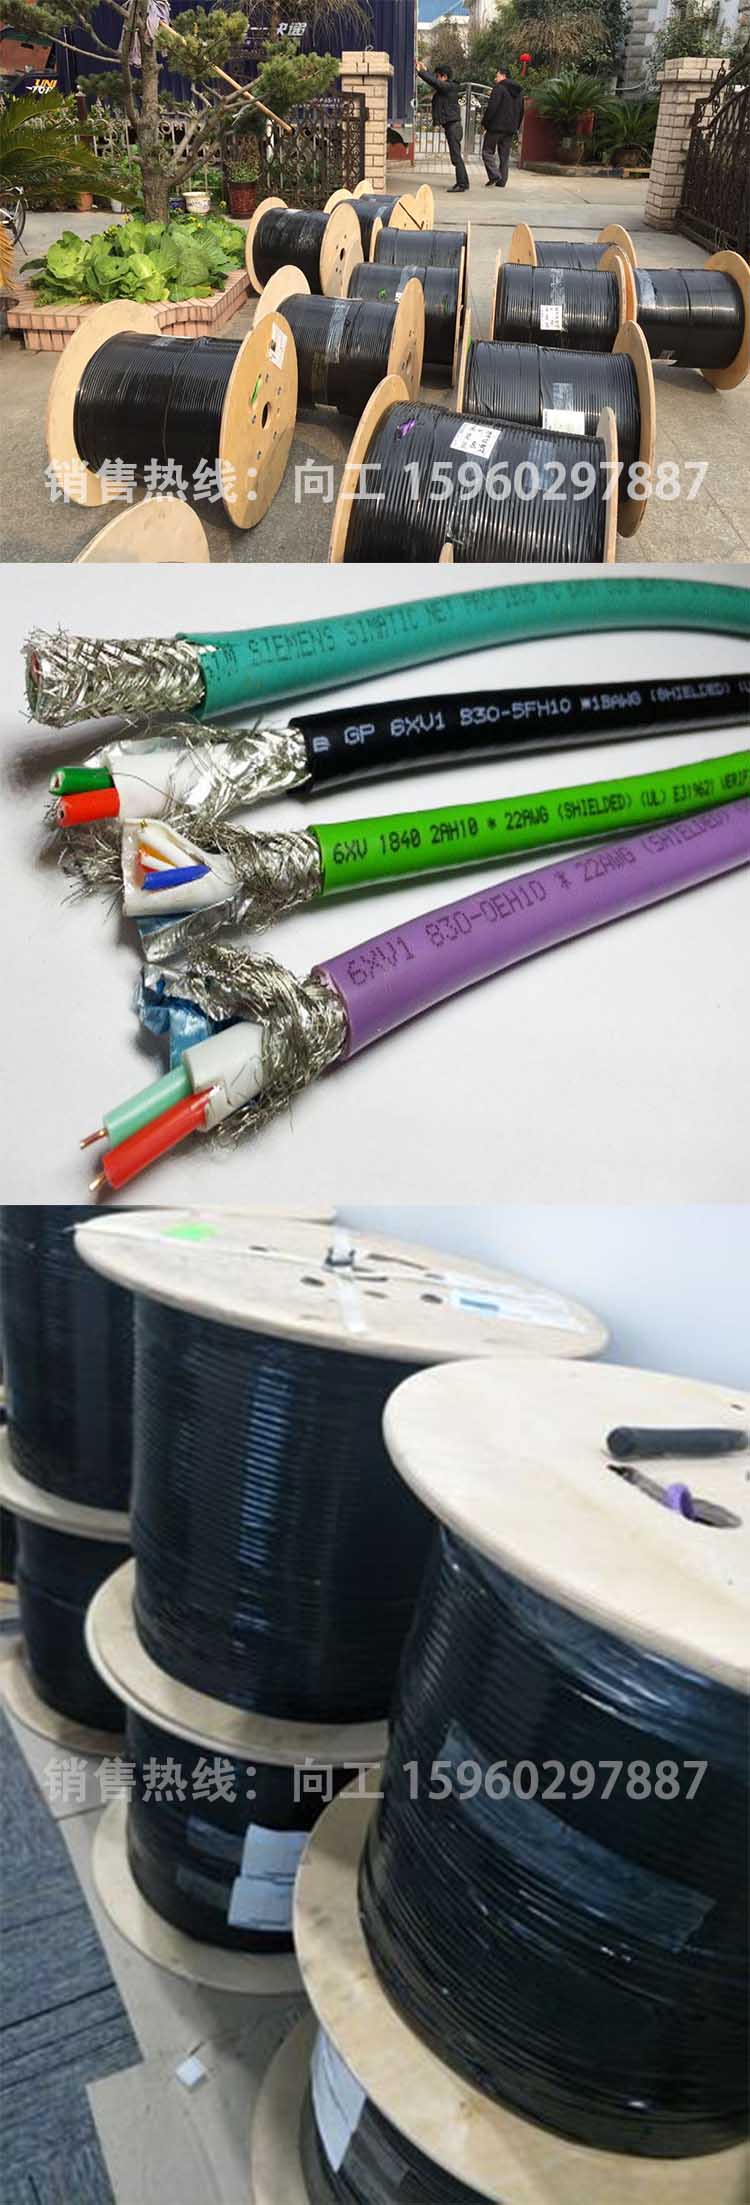 西门子RS485通讯电缆6XV1830-3EH10型号详细说明